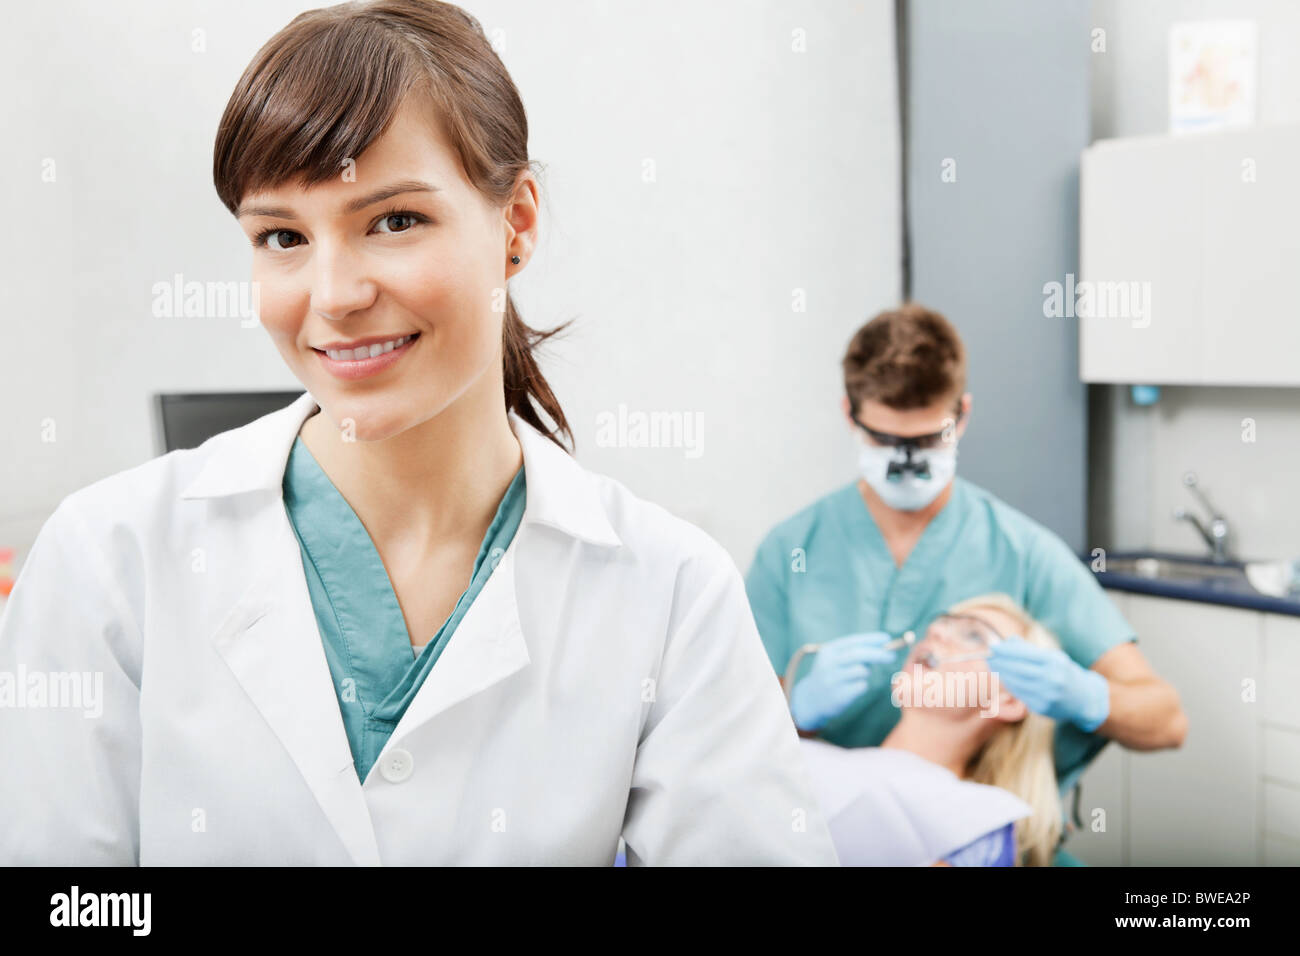 Retrato de un asistente dental sonriendo con trabajo odontológico en el fondo Foto de stock